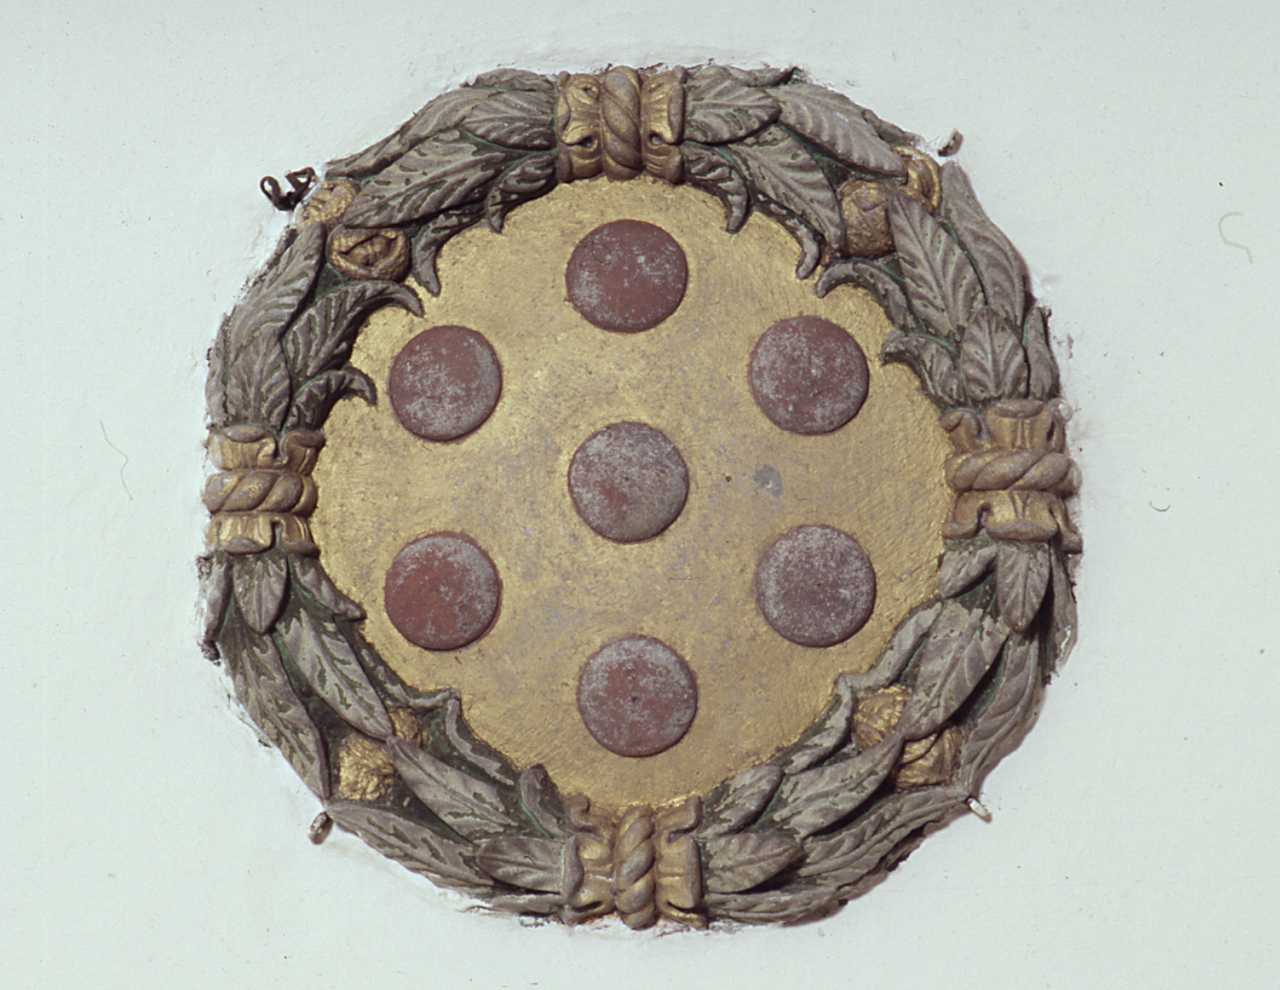 stemma gentilizio della famiglia Medici (chiave di volta) di Michelozzi Michelozzo (cerchia) (sec. XV)